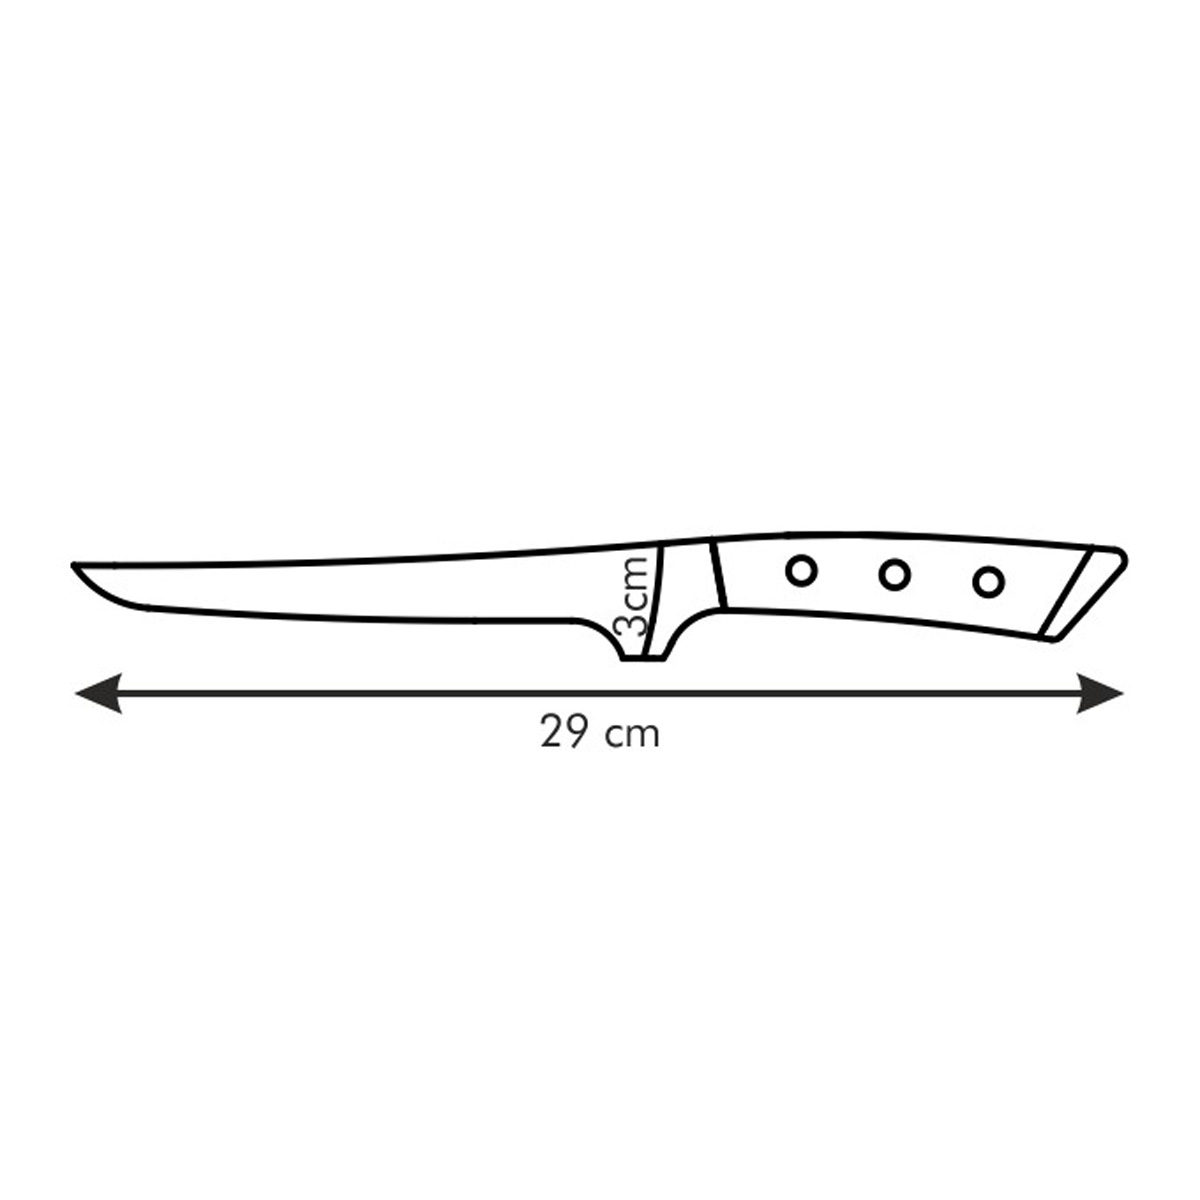 Nôž vykosťovací AZZA 16 cm